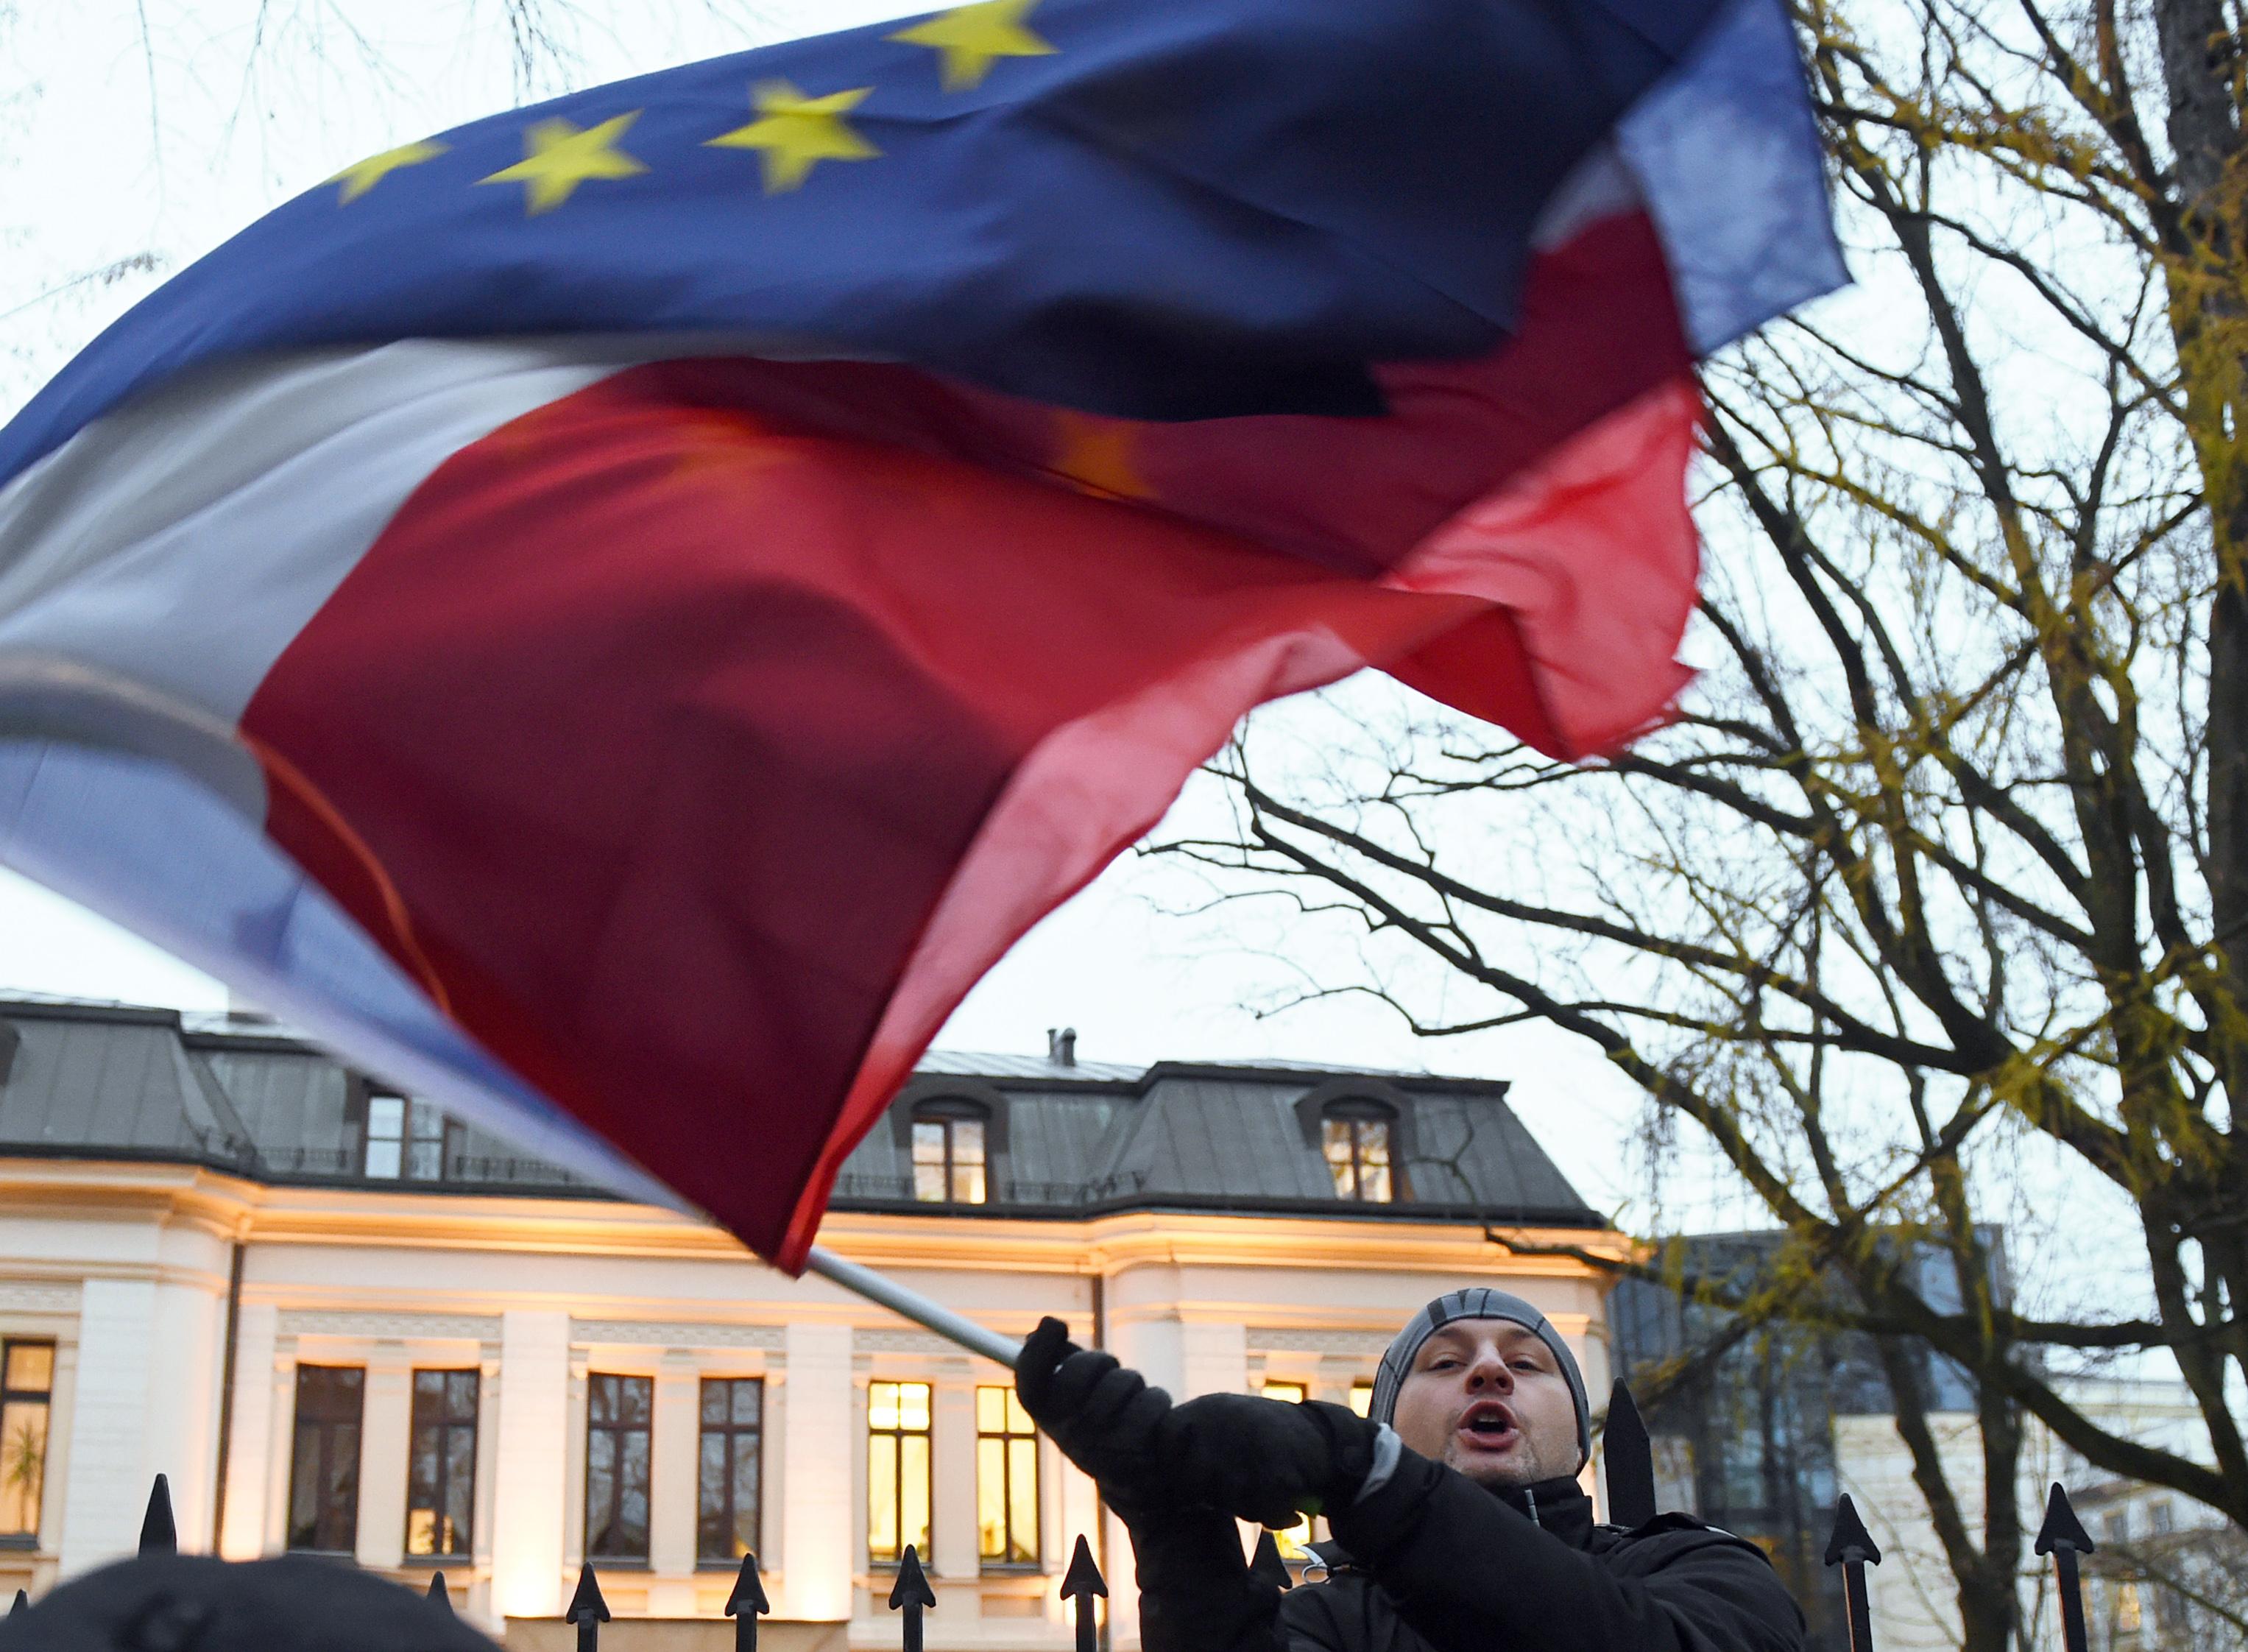 Det råder olika meningar om yttrandefrihet och rättsstatsprinciper mellan Polen och EU.
En man viftar med Polens och unionens flaggor framför den polska författningsdomstolen i Warszawa. (Foto: Janek Skarzynski /AFP/Getty Images)